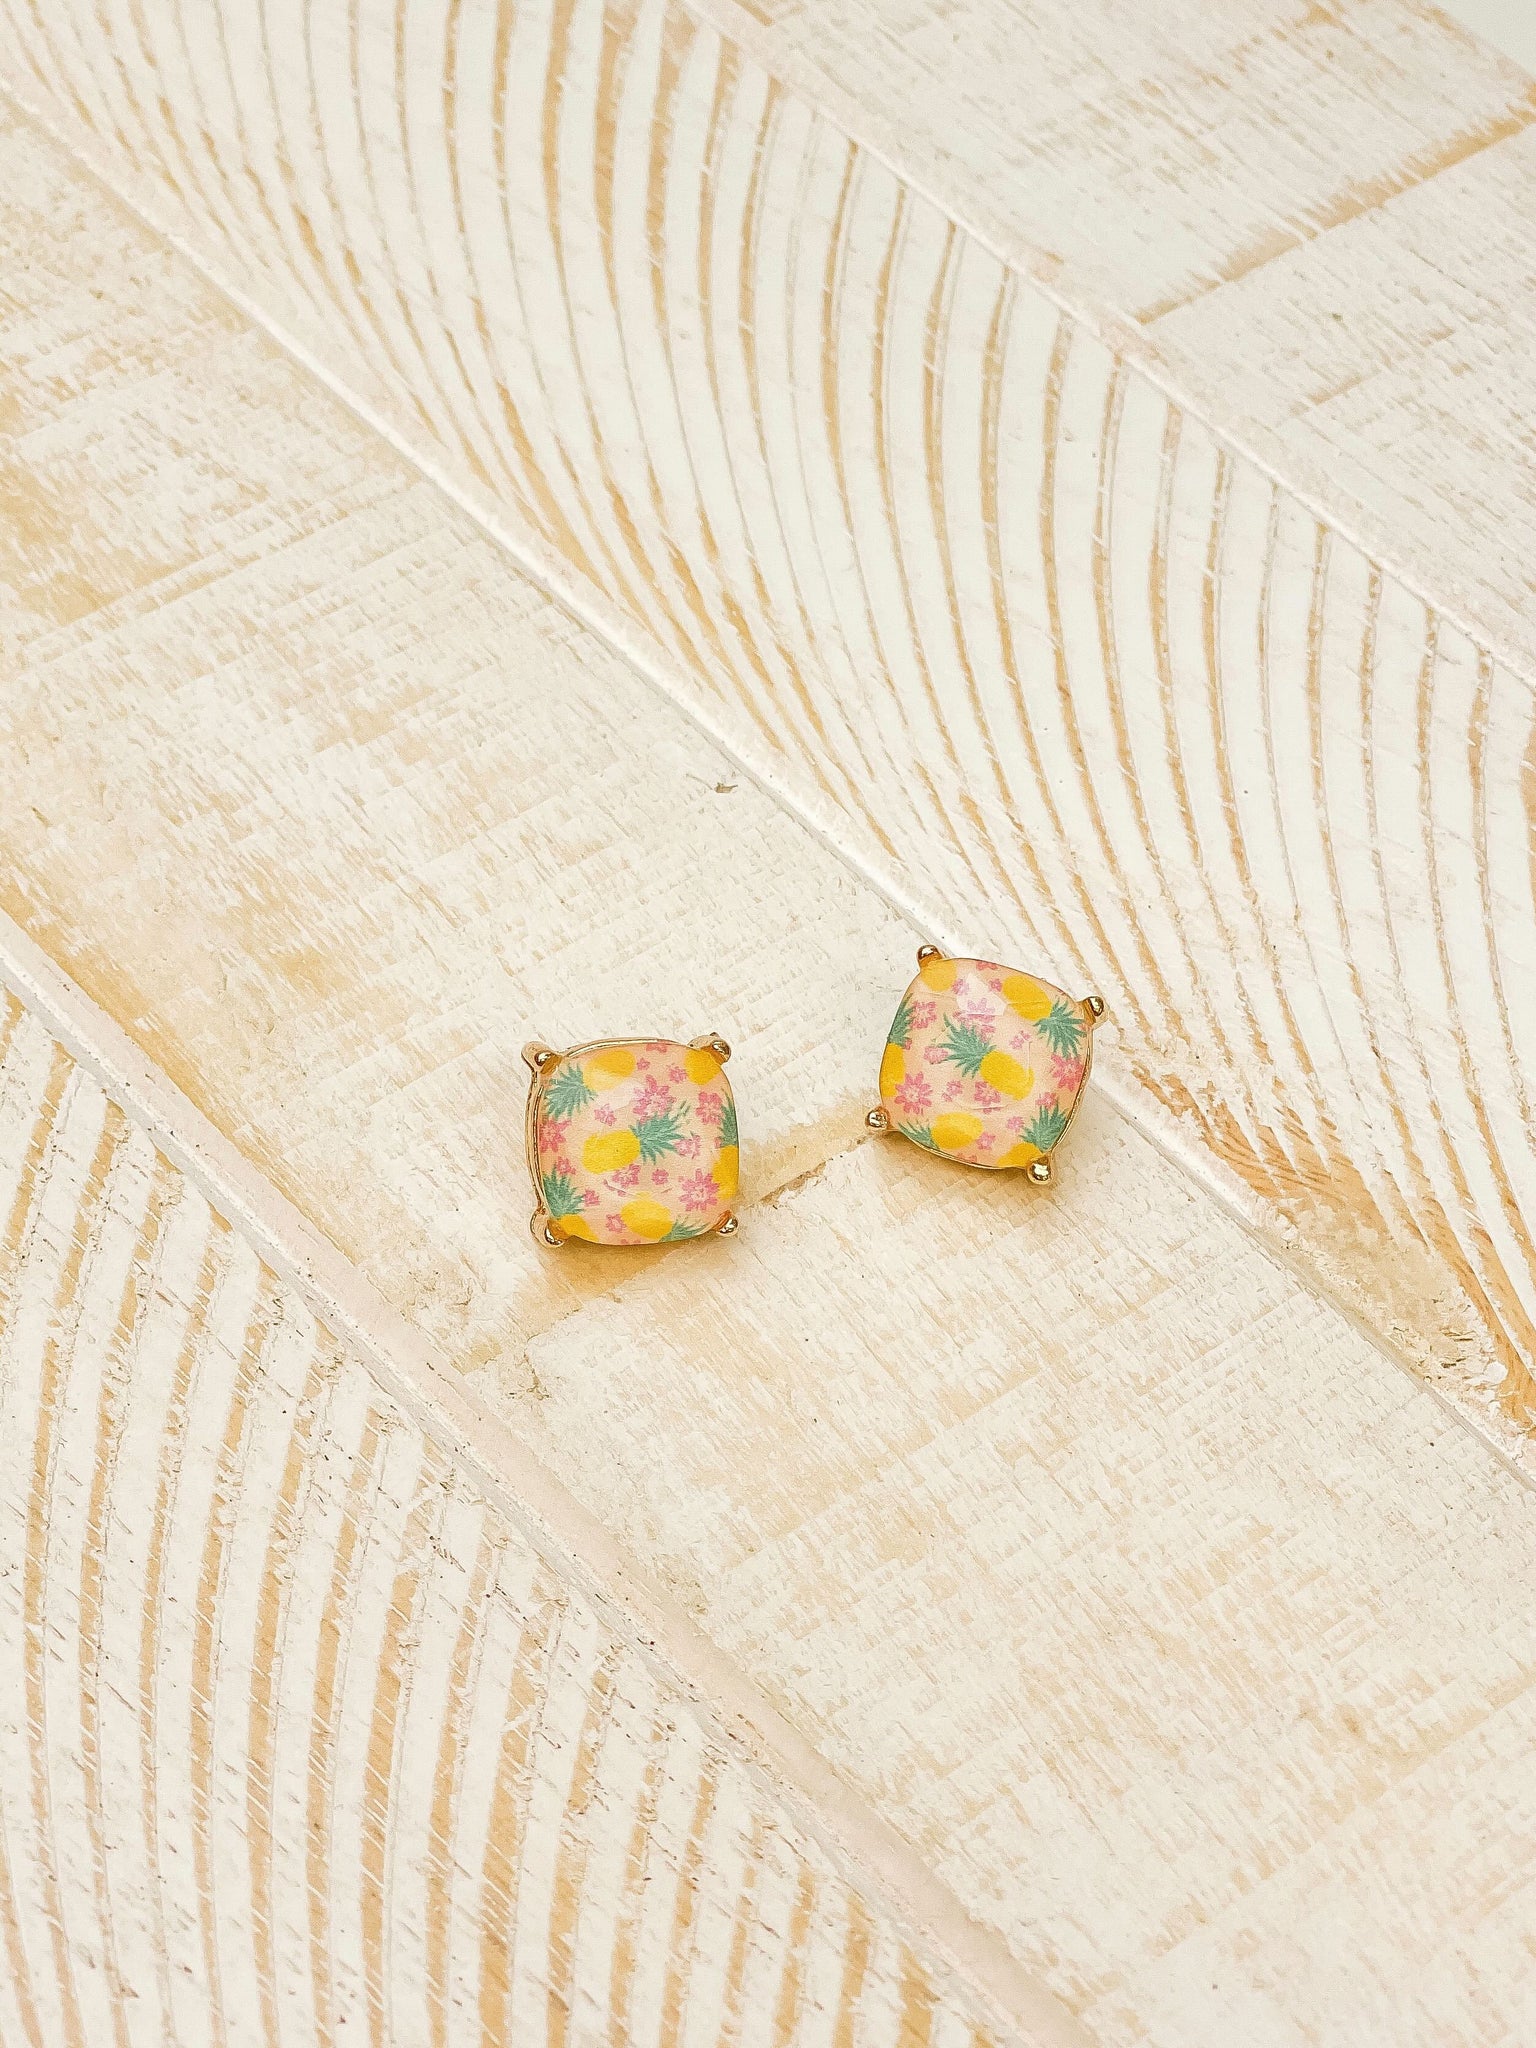 Preppy Pineapple Printed Stud Earrings